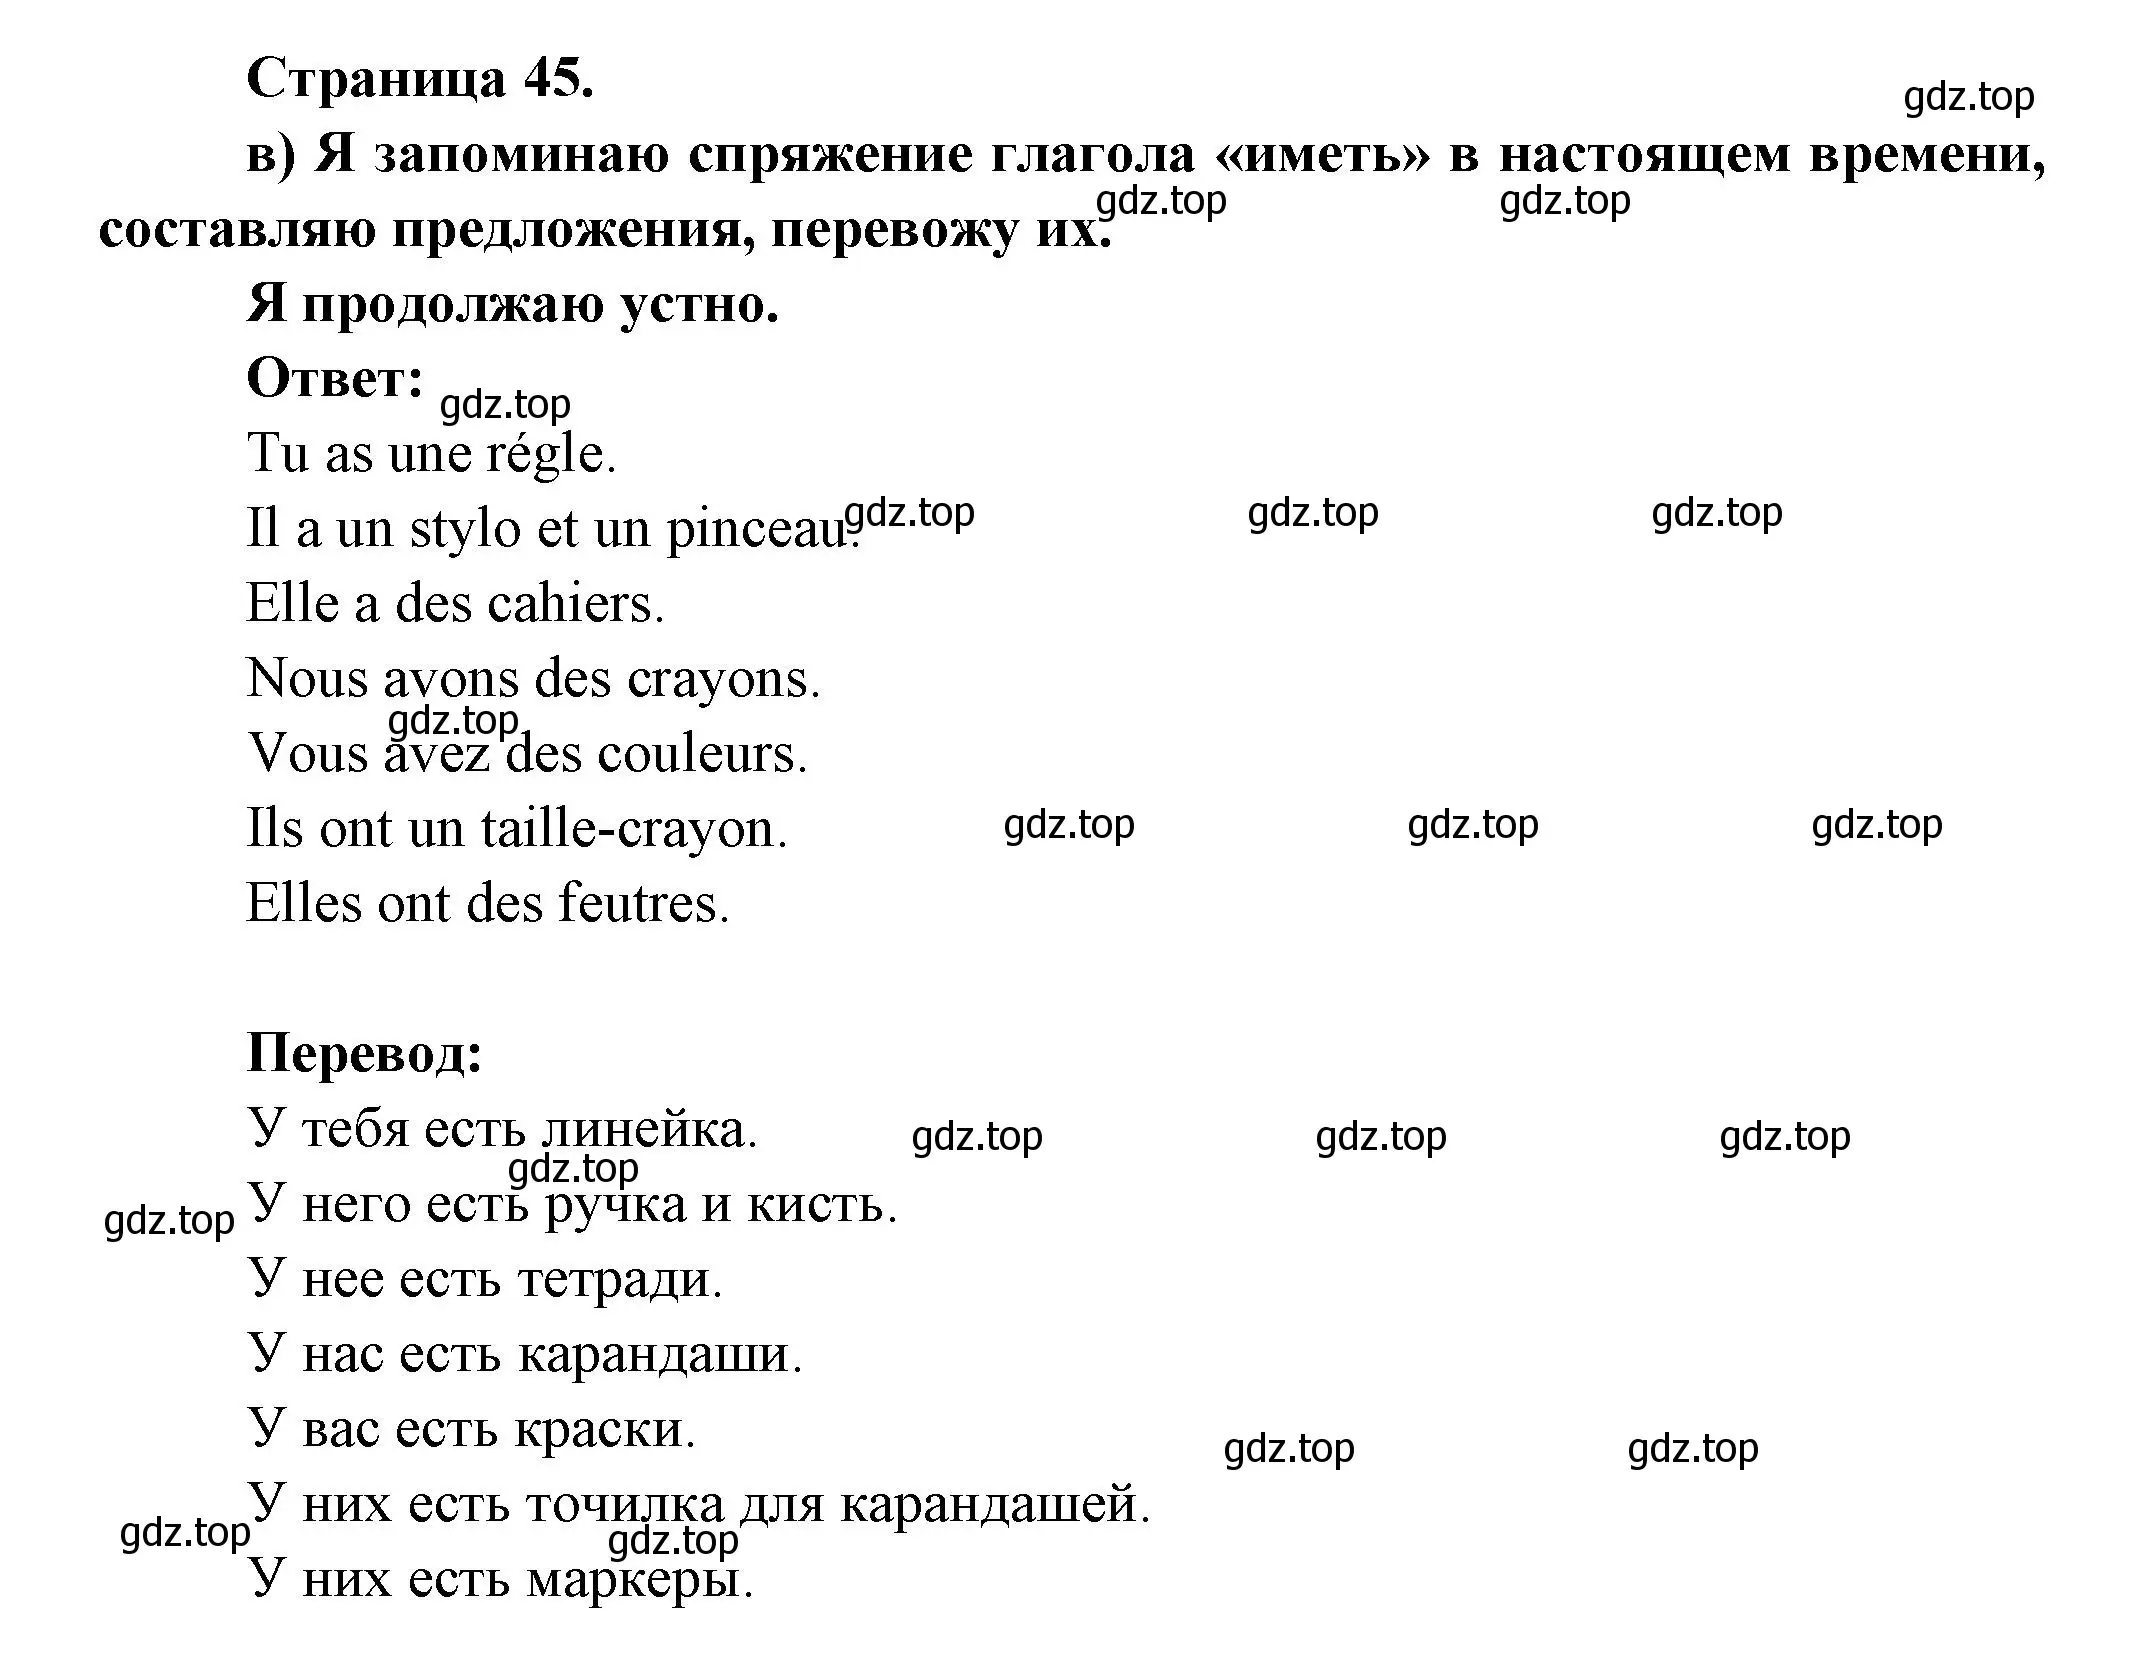 Решение  45 (страница 45) гдз по французскому языку 3 класс Кулигин, Кирьянова, учебник 1 часть